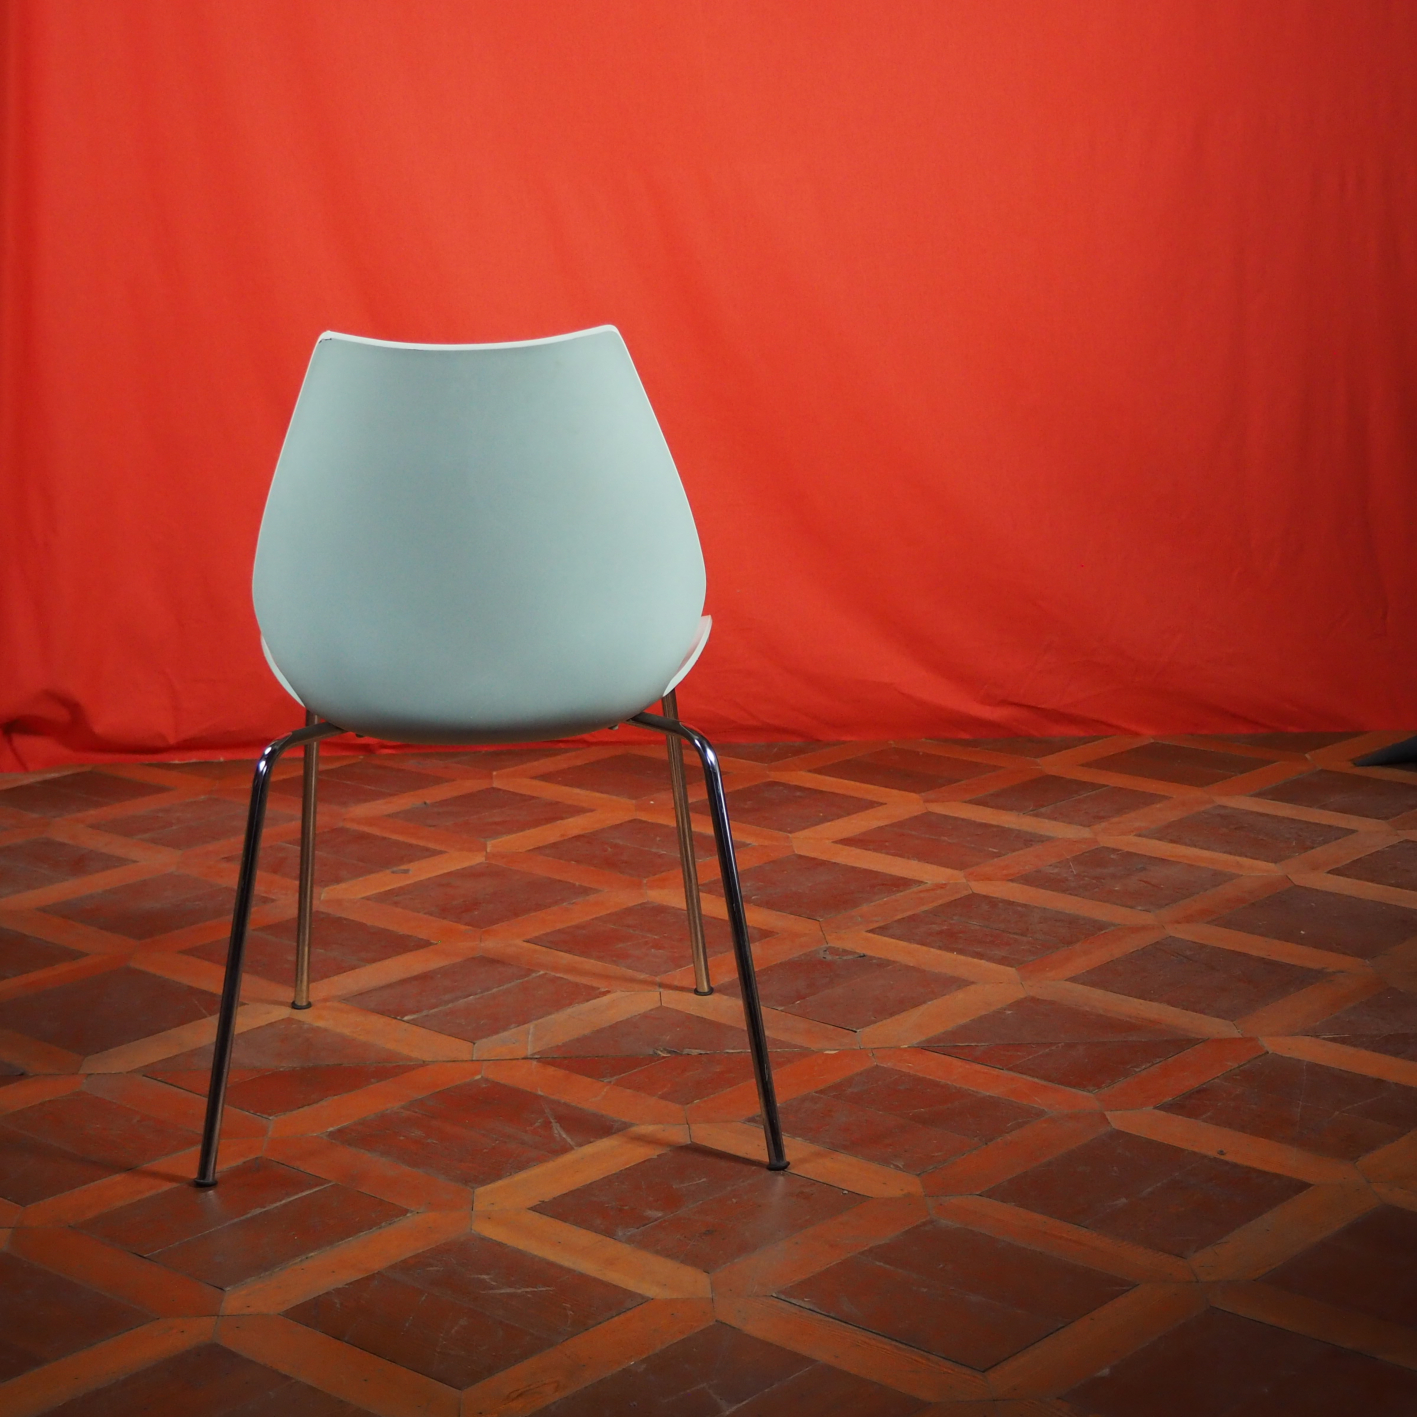 Chair 'Maui' for Kartell - Light blue